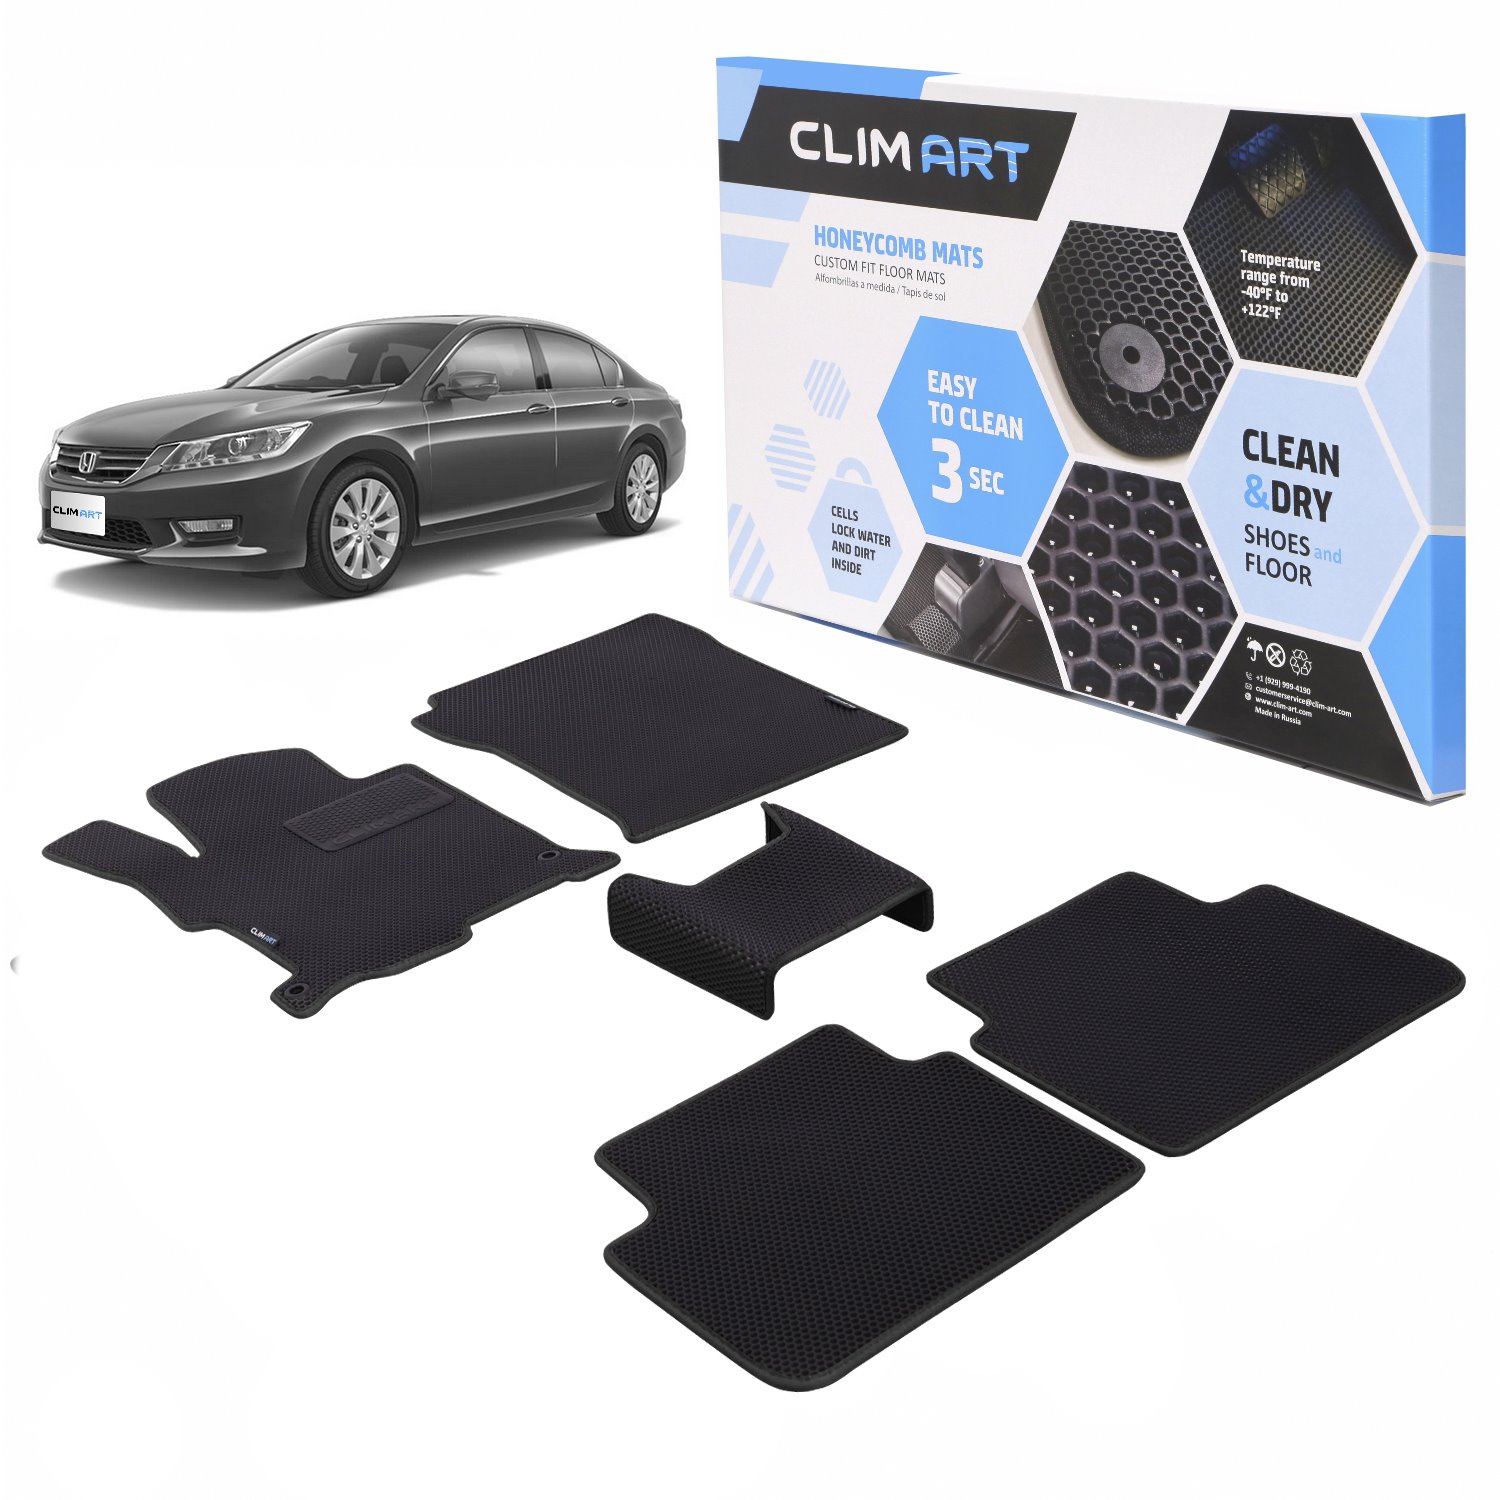 CLIM ART Honeycomb Custom Fit Floor Mats for 2013-2017 Honda Accord Sedan